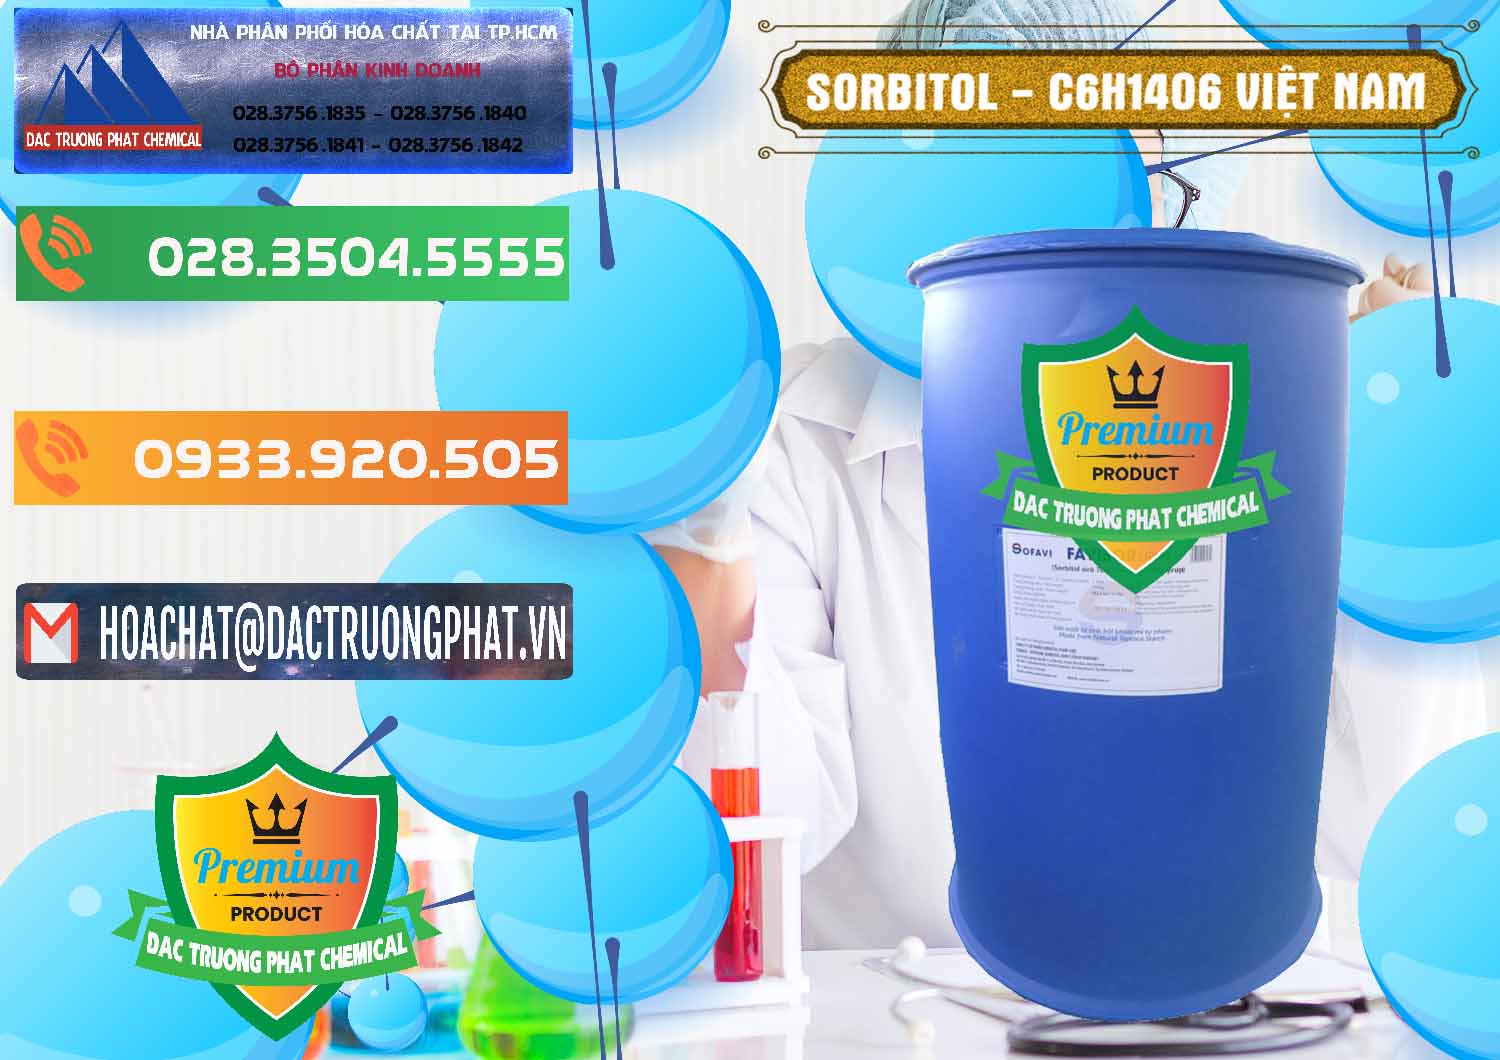 Nơi chuyên bán và cung ứng Sorbitol - C6H14O6 Lỏng 70% Food Grade Việt Nam - 0438 - Bán & phân phối hóa chất tại TP.HCM - hoachatxulynuoc.com.vn